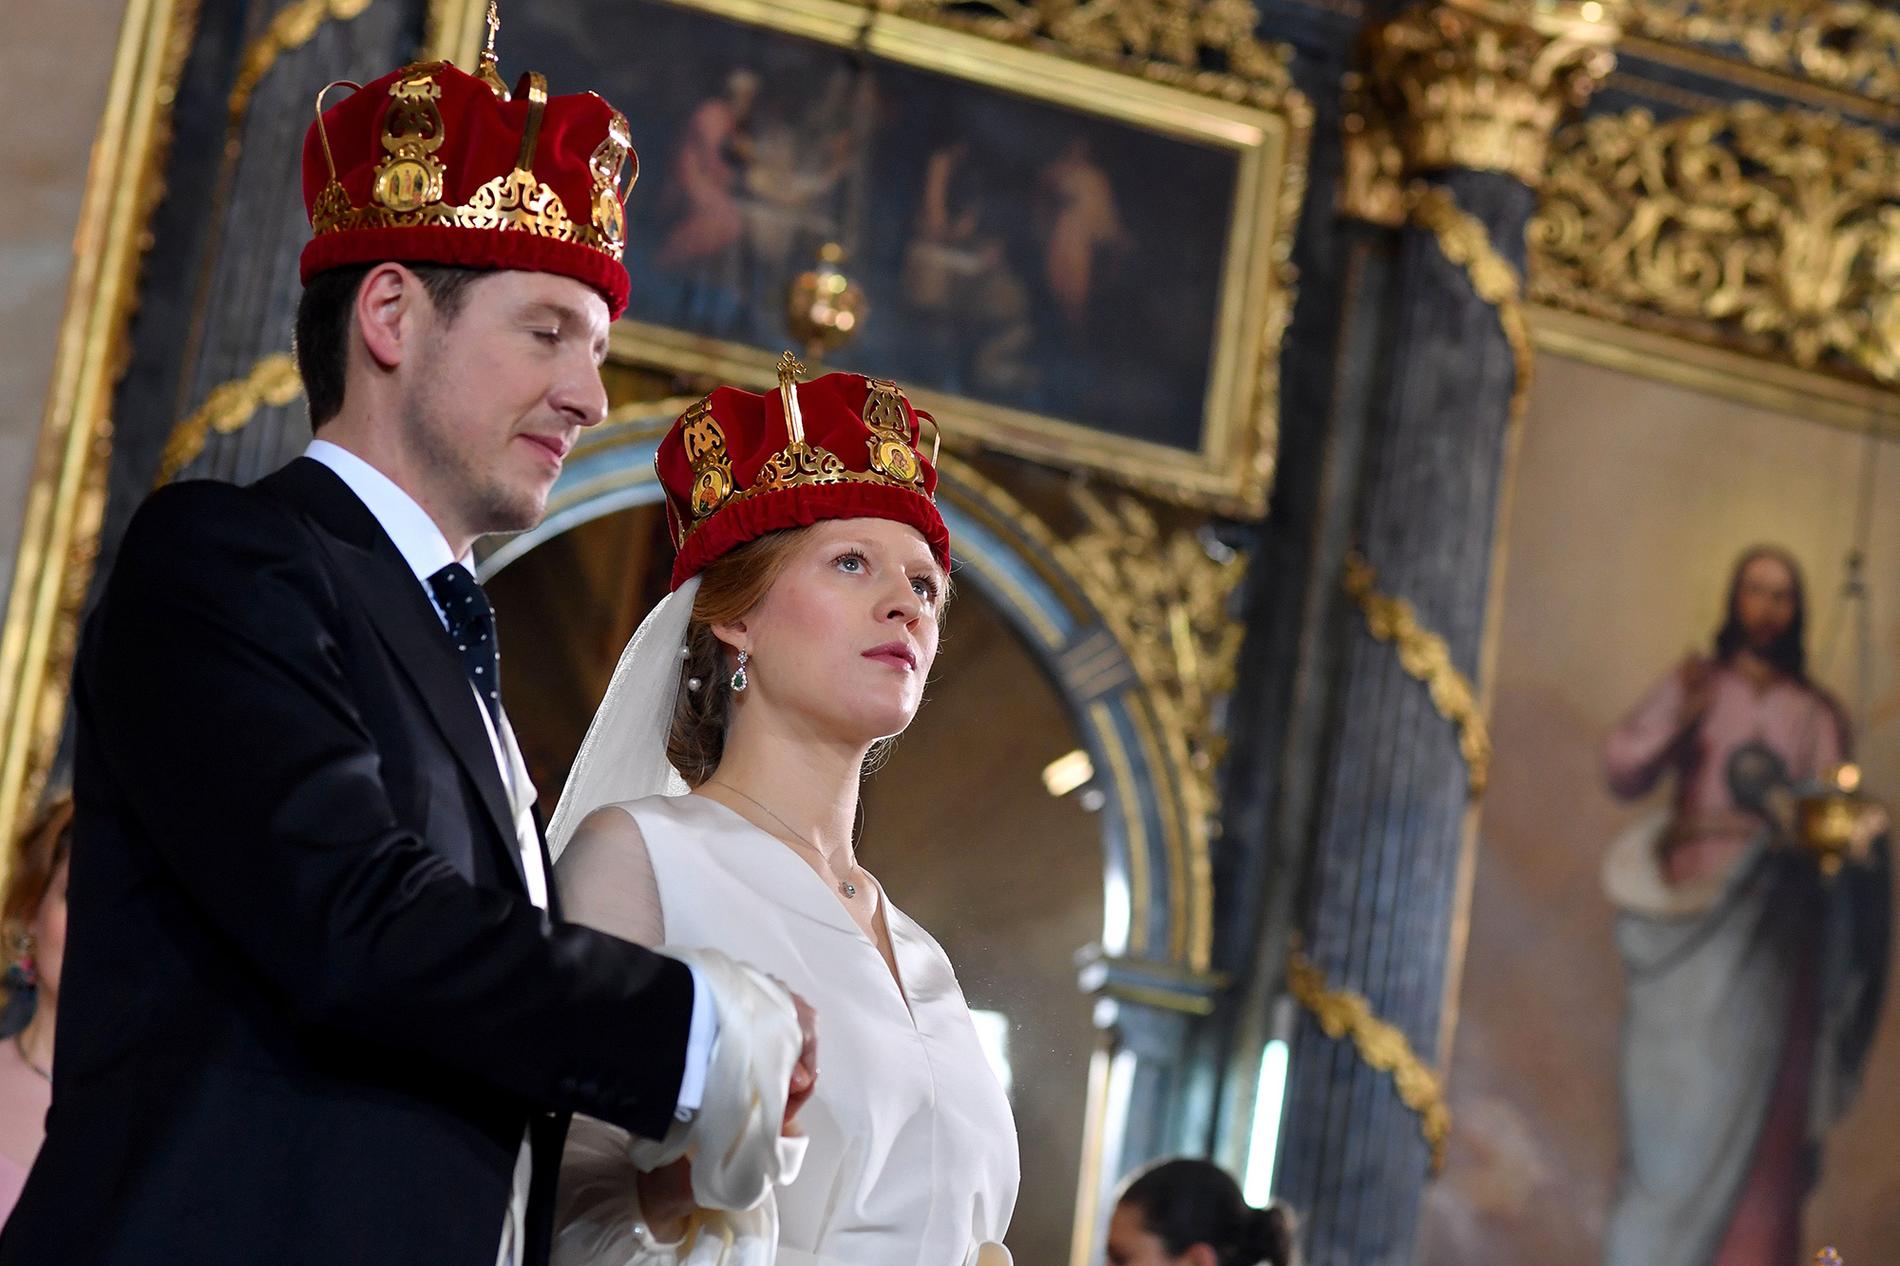 Prins Philip och Danica Marinkovic gifter sig i St. Michael's Katedralen i Belgrad, Serbien.